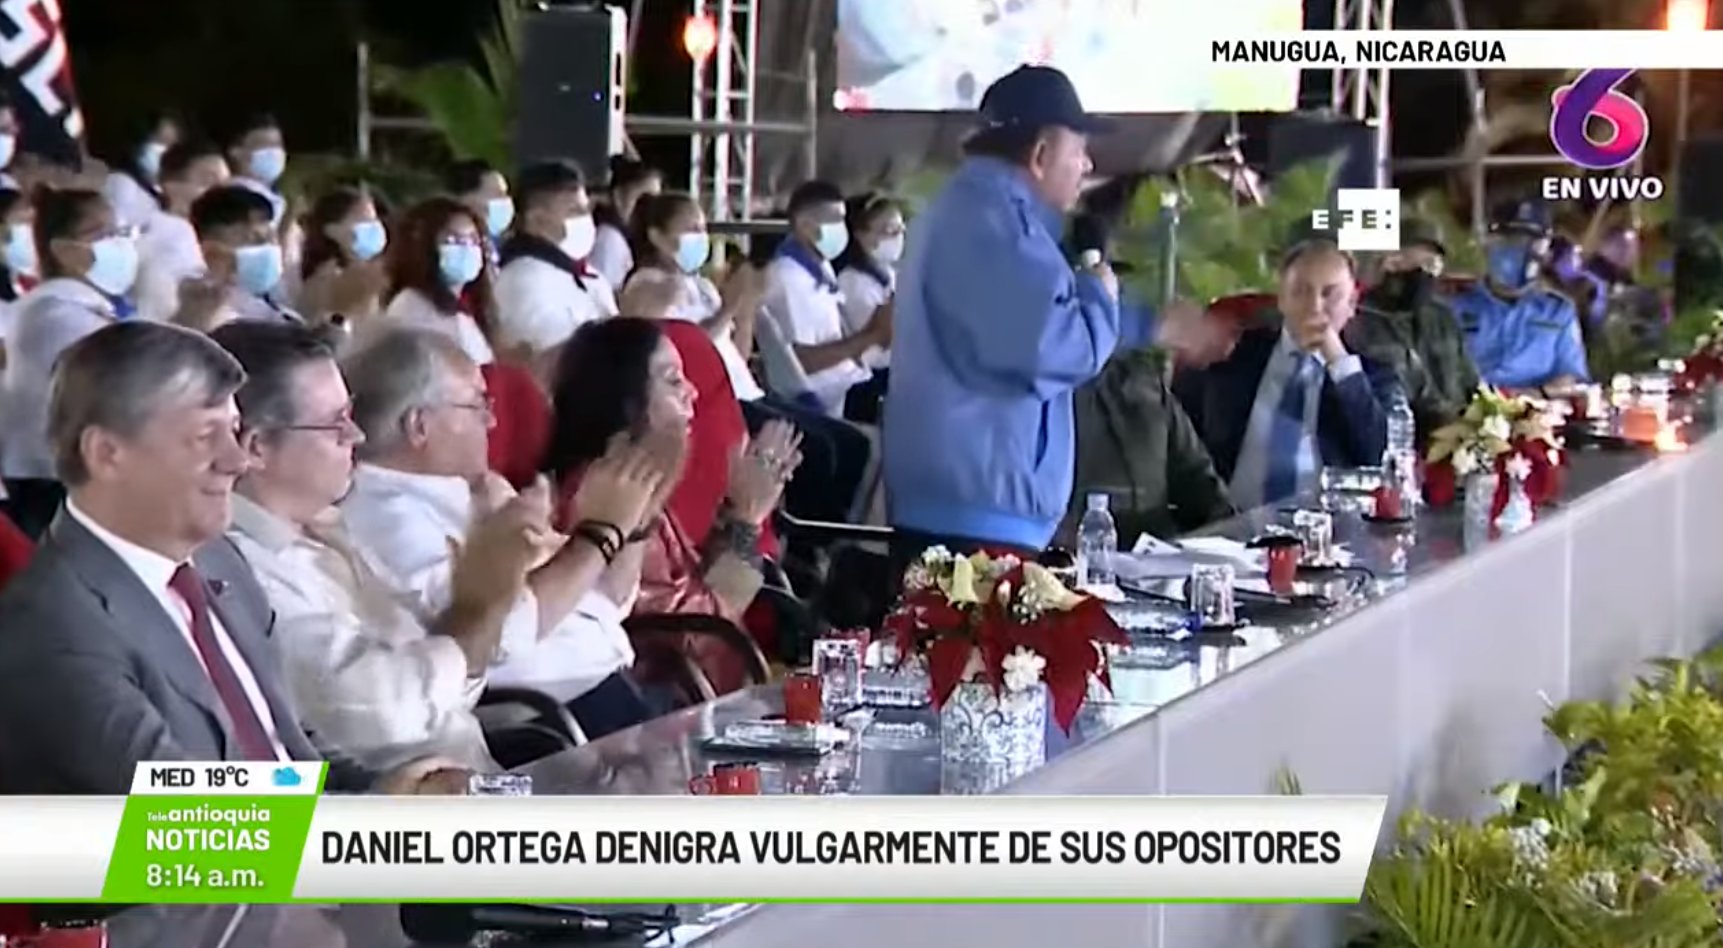 Daniel Ortega denigra vulgarmente a sus opositores